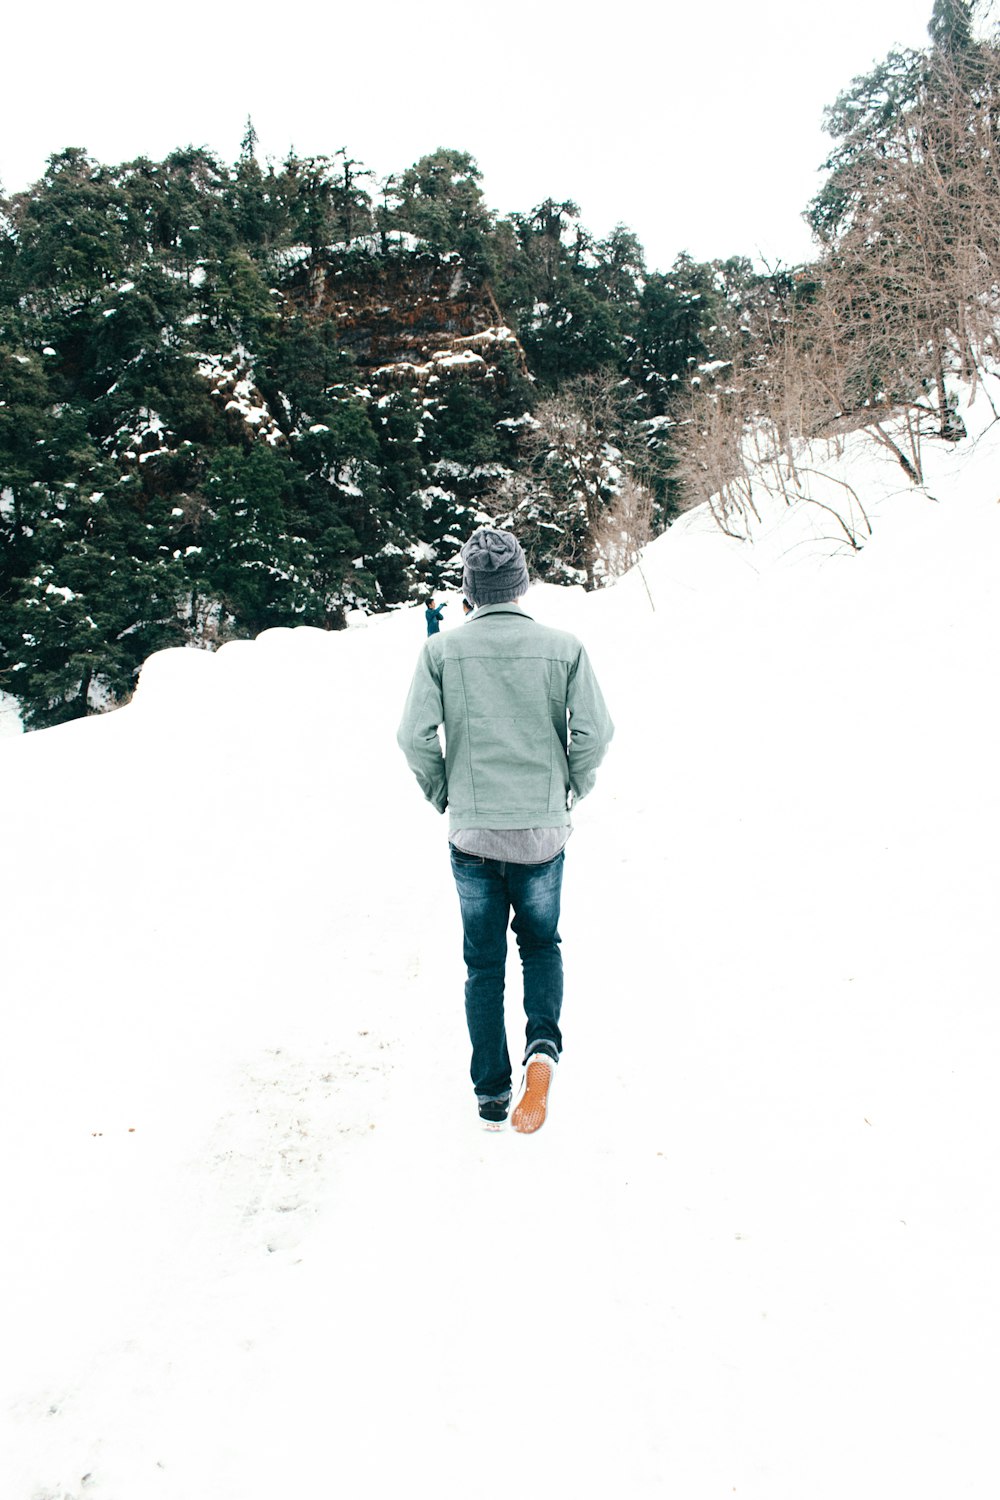 Mann in grauer Jacke und blauer Jeans tagsüber auf schneebedecktem Boden